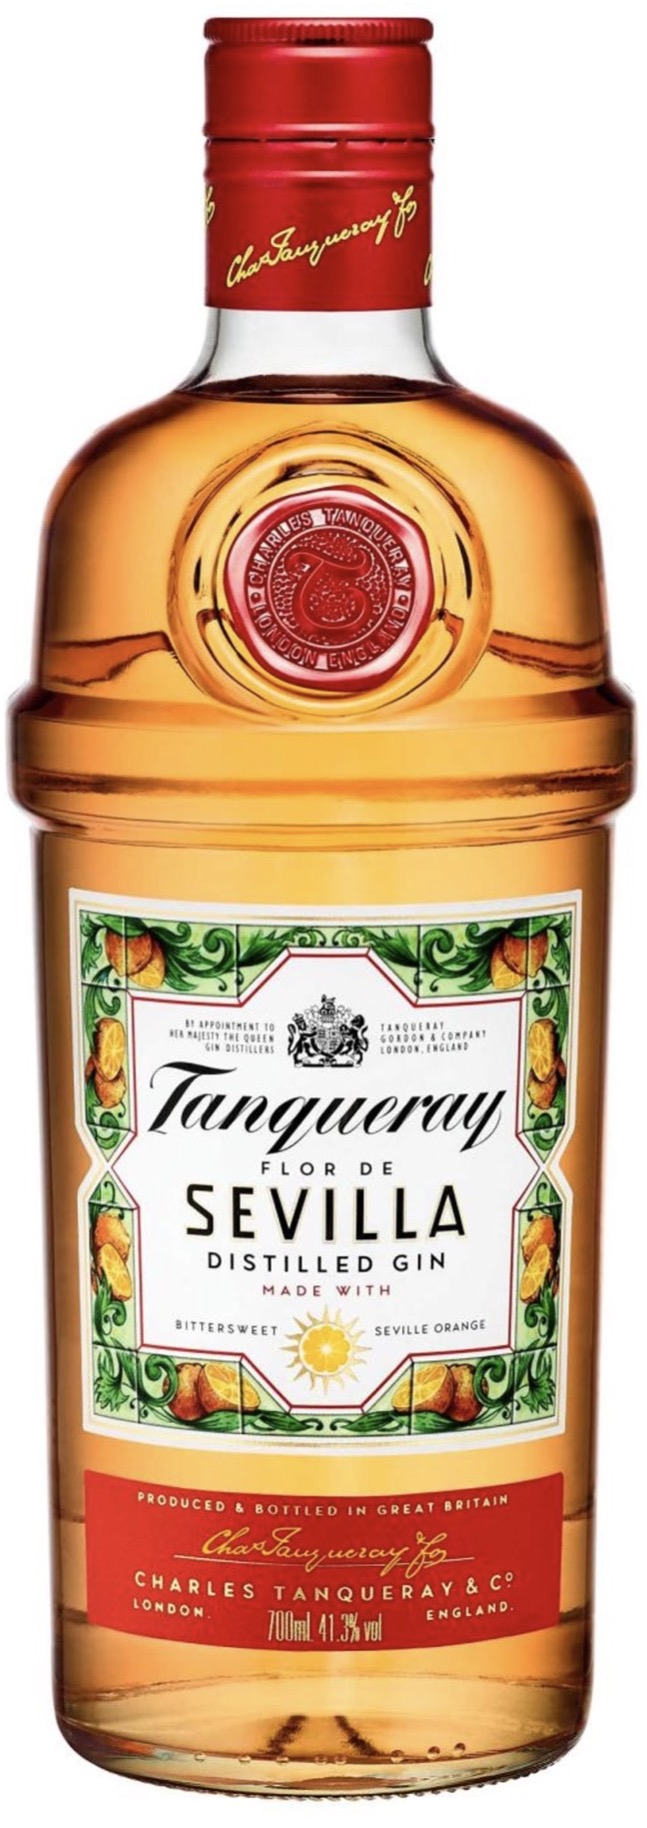 Tanqueray Flor de Sevilla Gin 41,3% vol. 0,7L